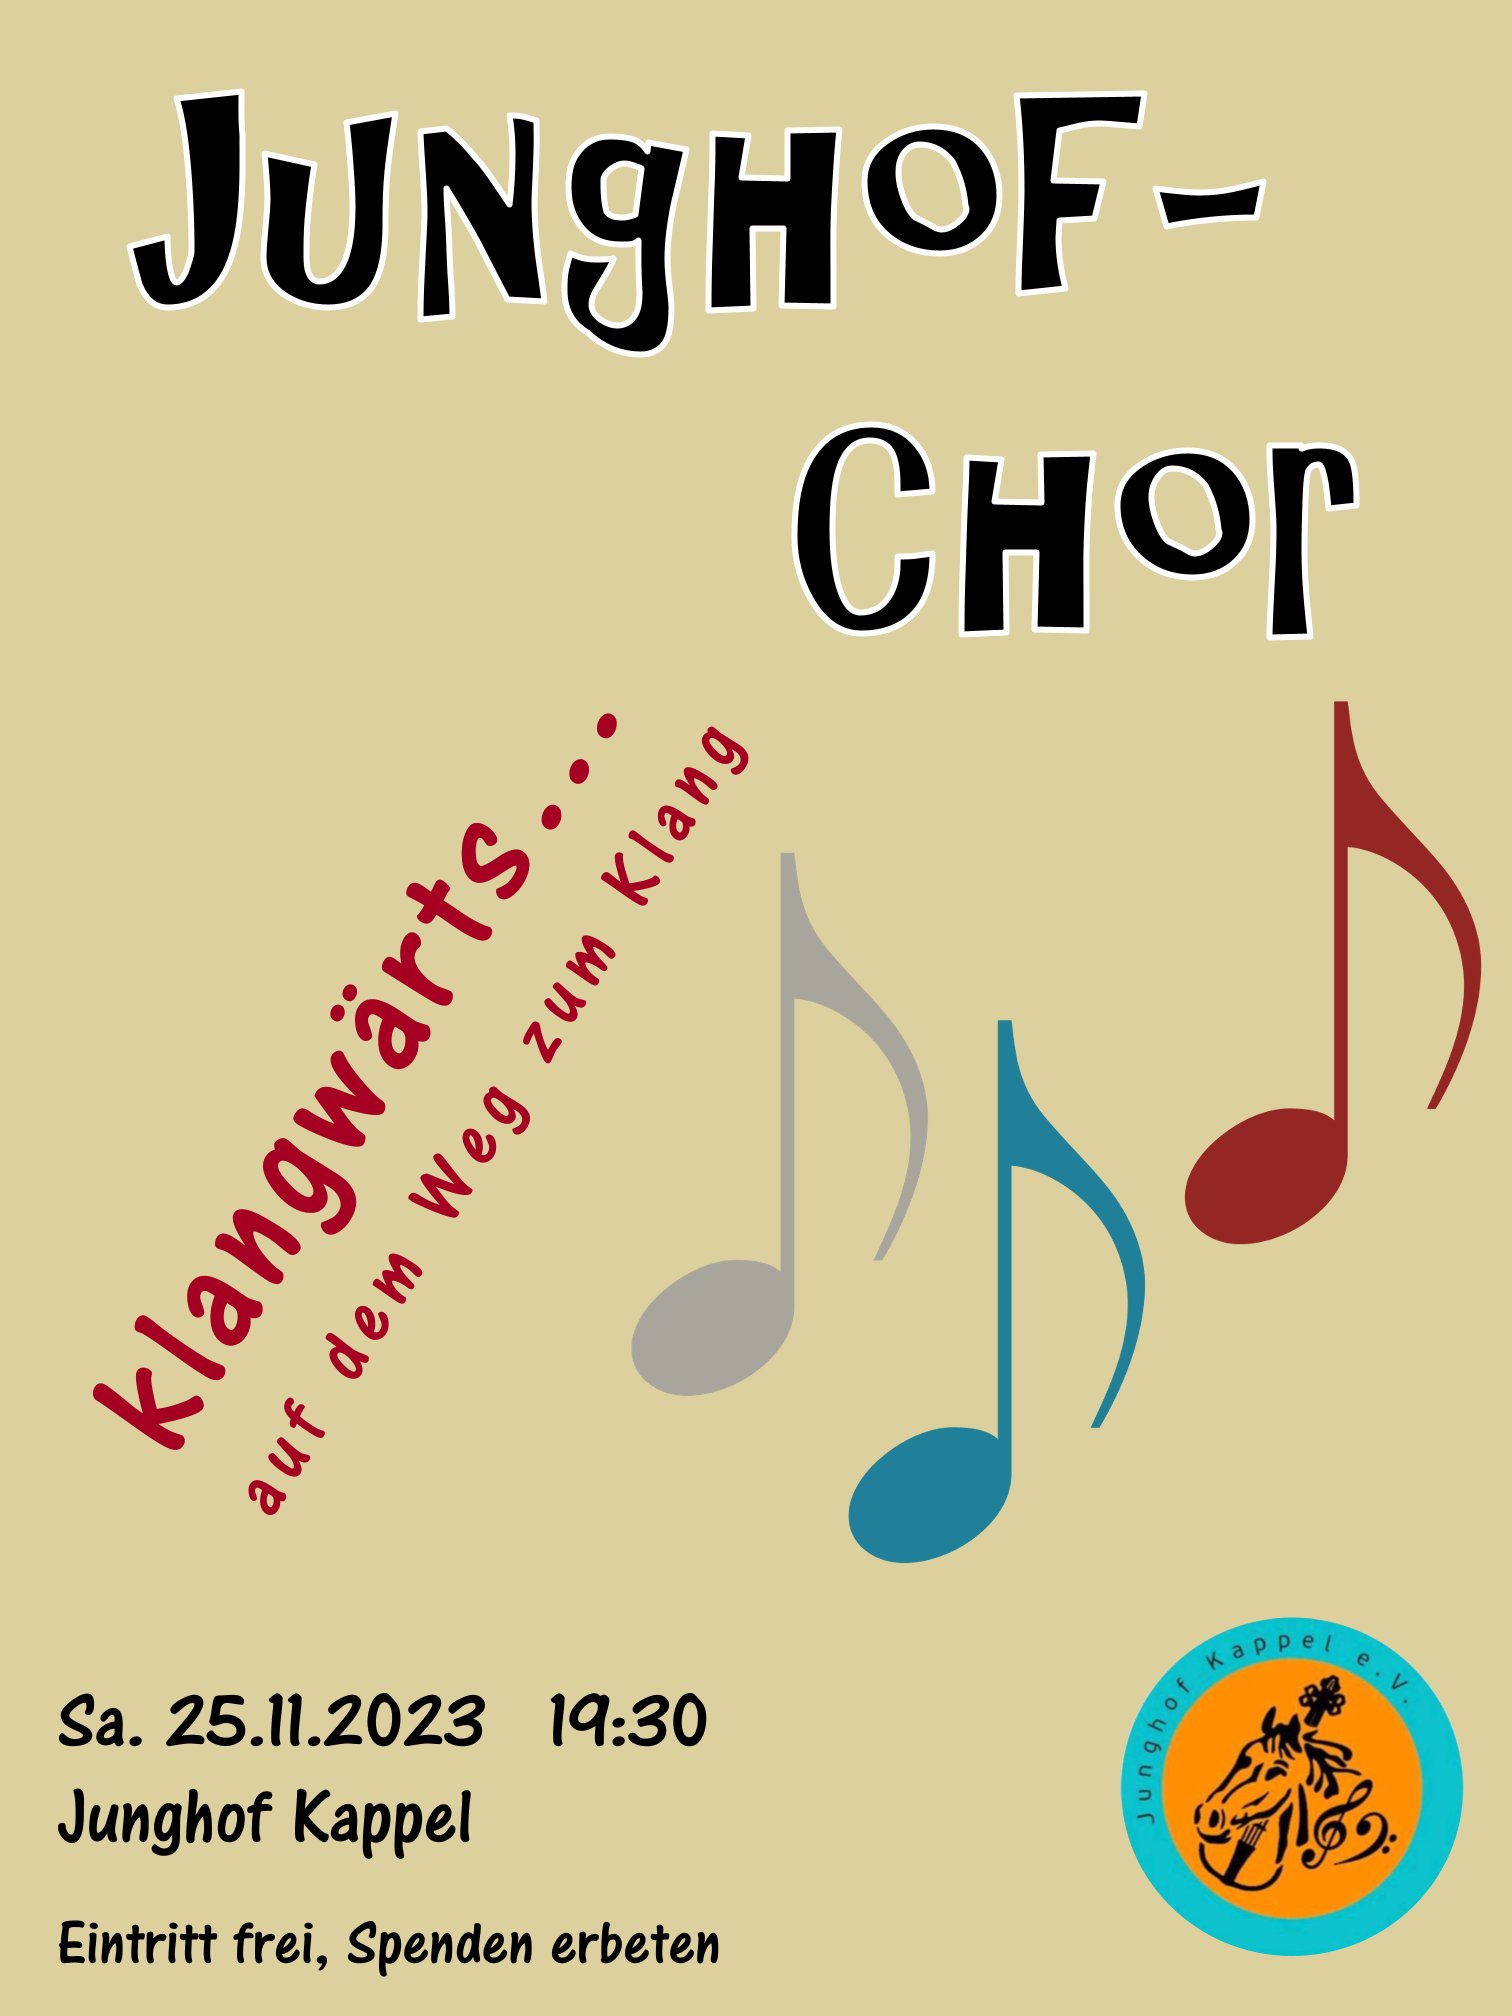 Junghof-Chor am 25.11.2023 um 19:30